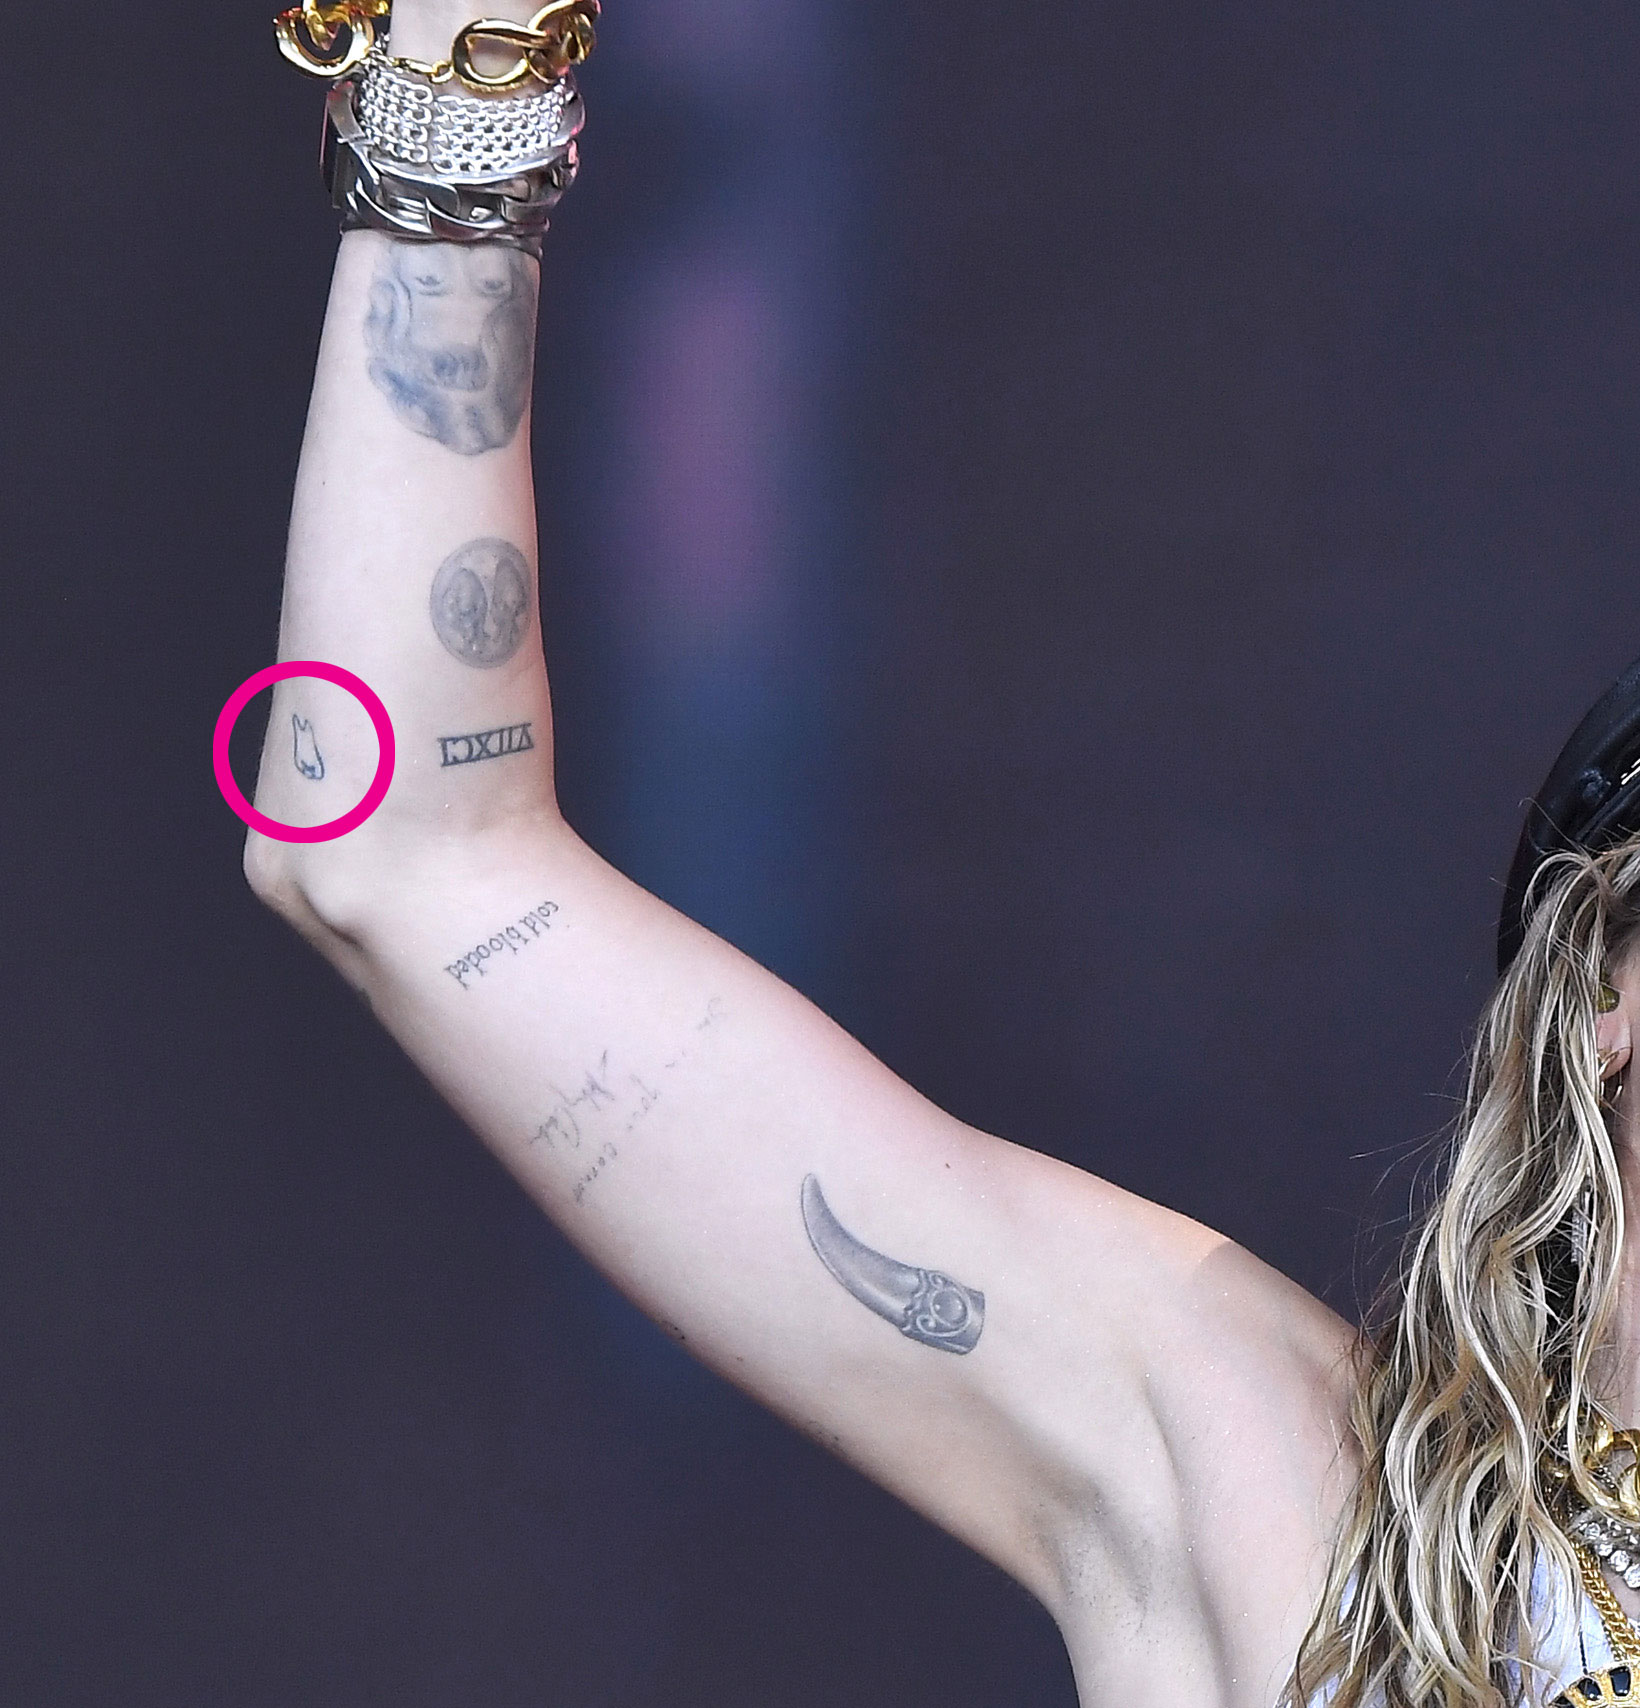 Miley Cyrus Tattoos: Complete Breakdown Of Ink Designs' Meanings